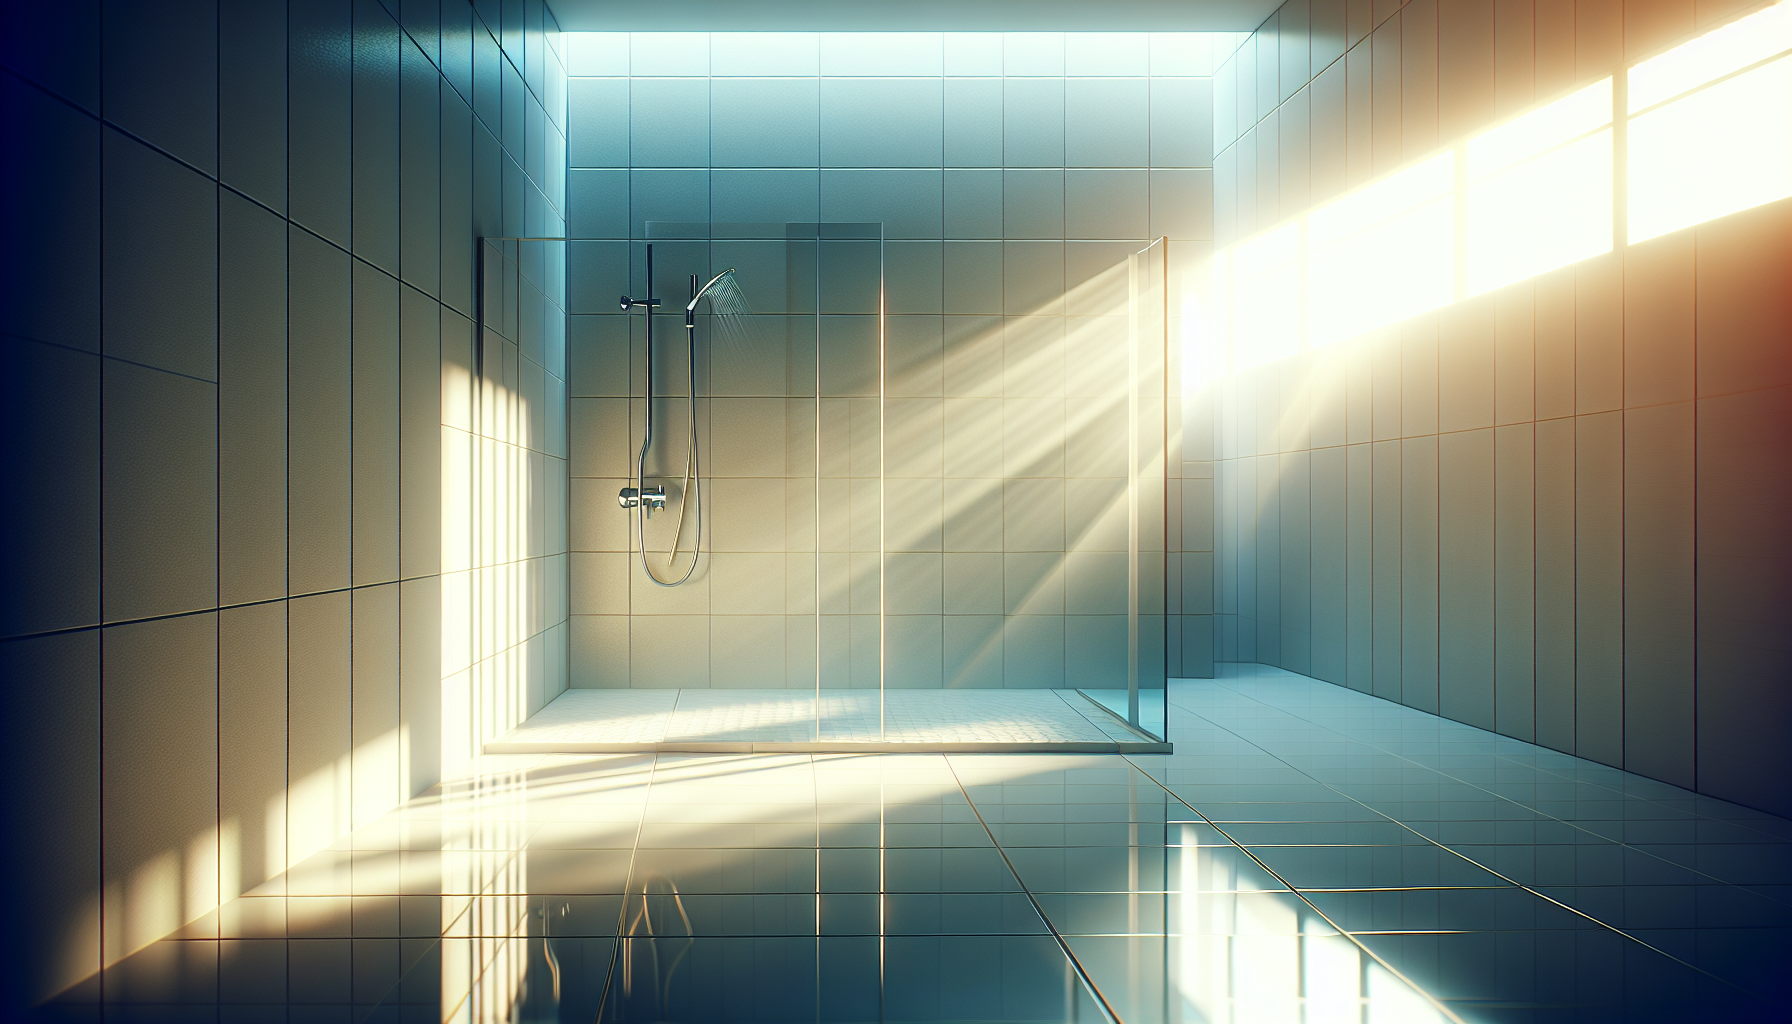 Dusche im Badezimmer mit Tageslicht von Dachfenstern